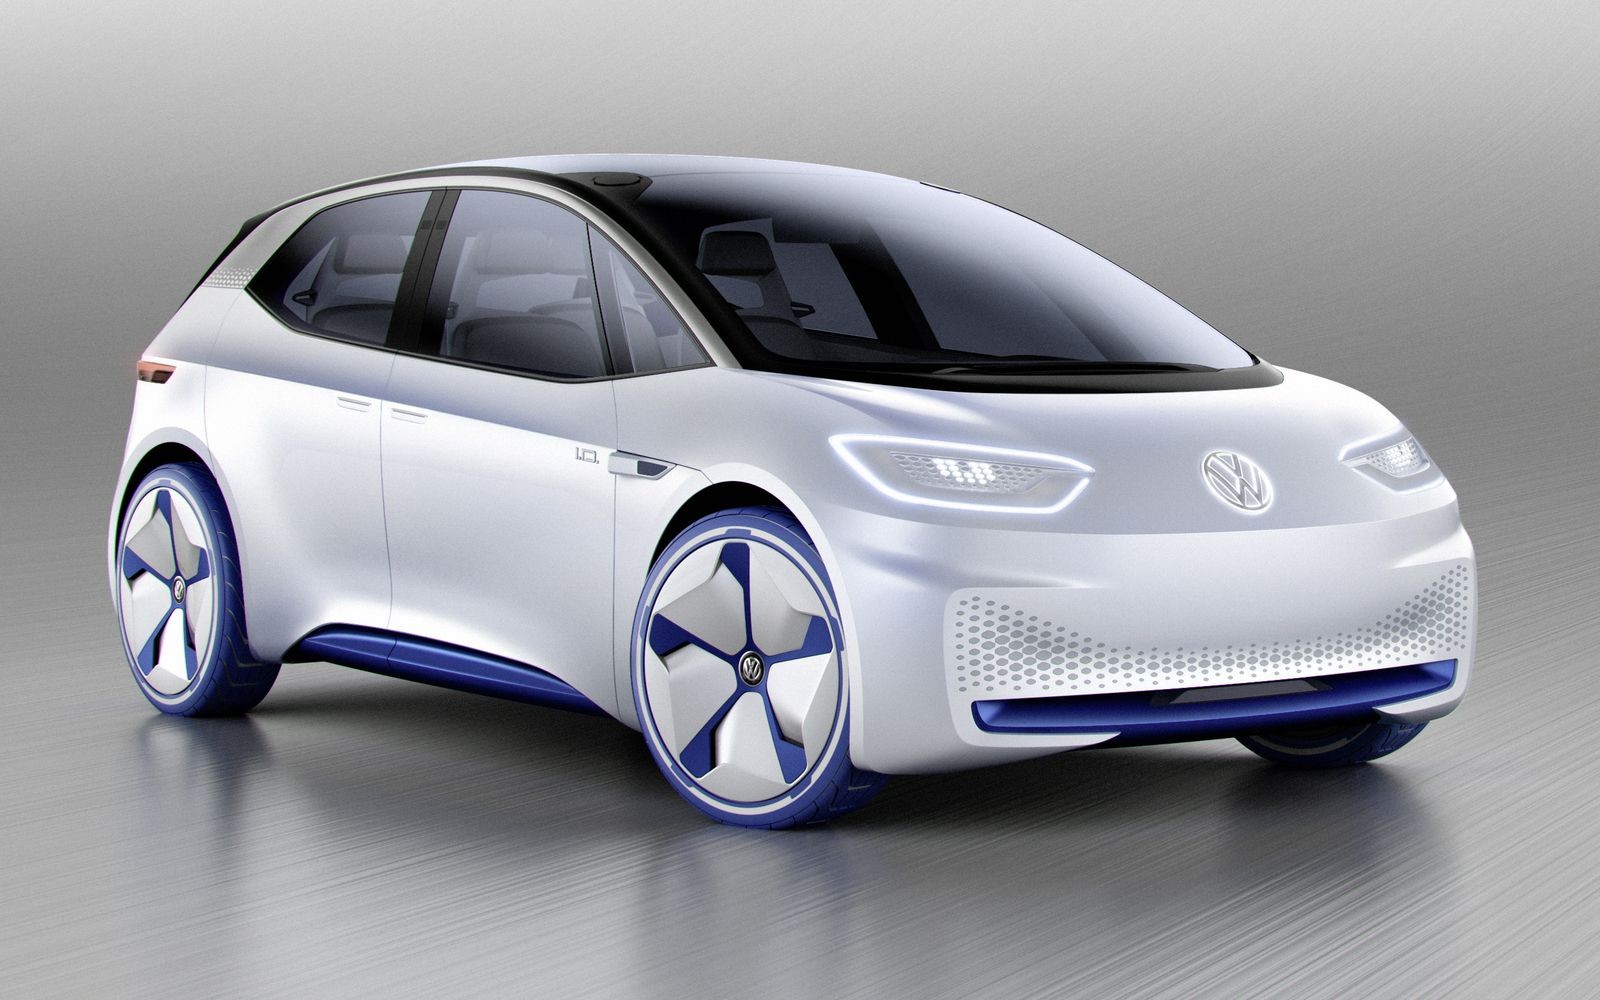 Концептуальный Volkswagen I.D. превратится в серийный электрический хэтчбек I.D. Neo в 2020 году.